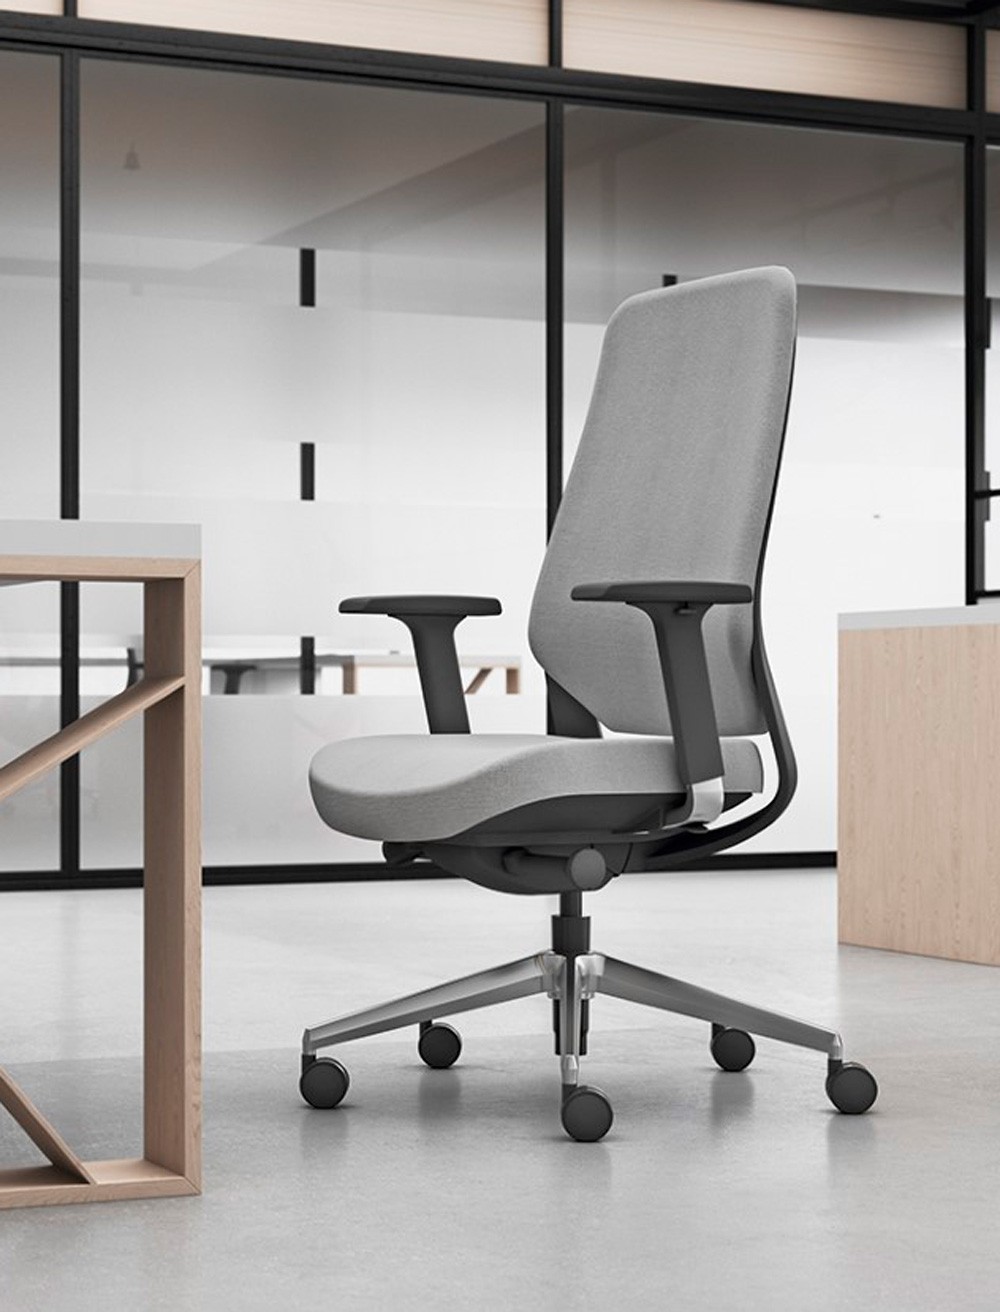 Desfruta de um trabalho produtivo e confortável com a cadeira de escritório Silk Low. Esta cadeira oferece uma ergonomia perfeita para o teu corpo, garantindo assim um bem-estar durante todo o dia.